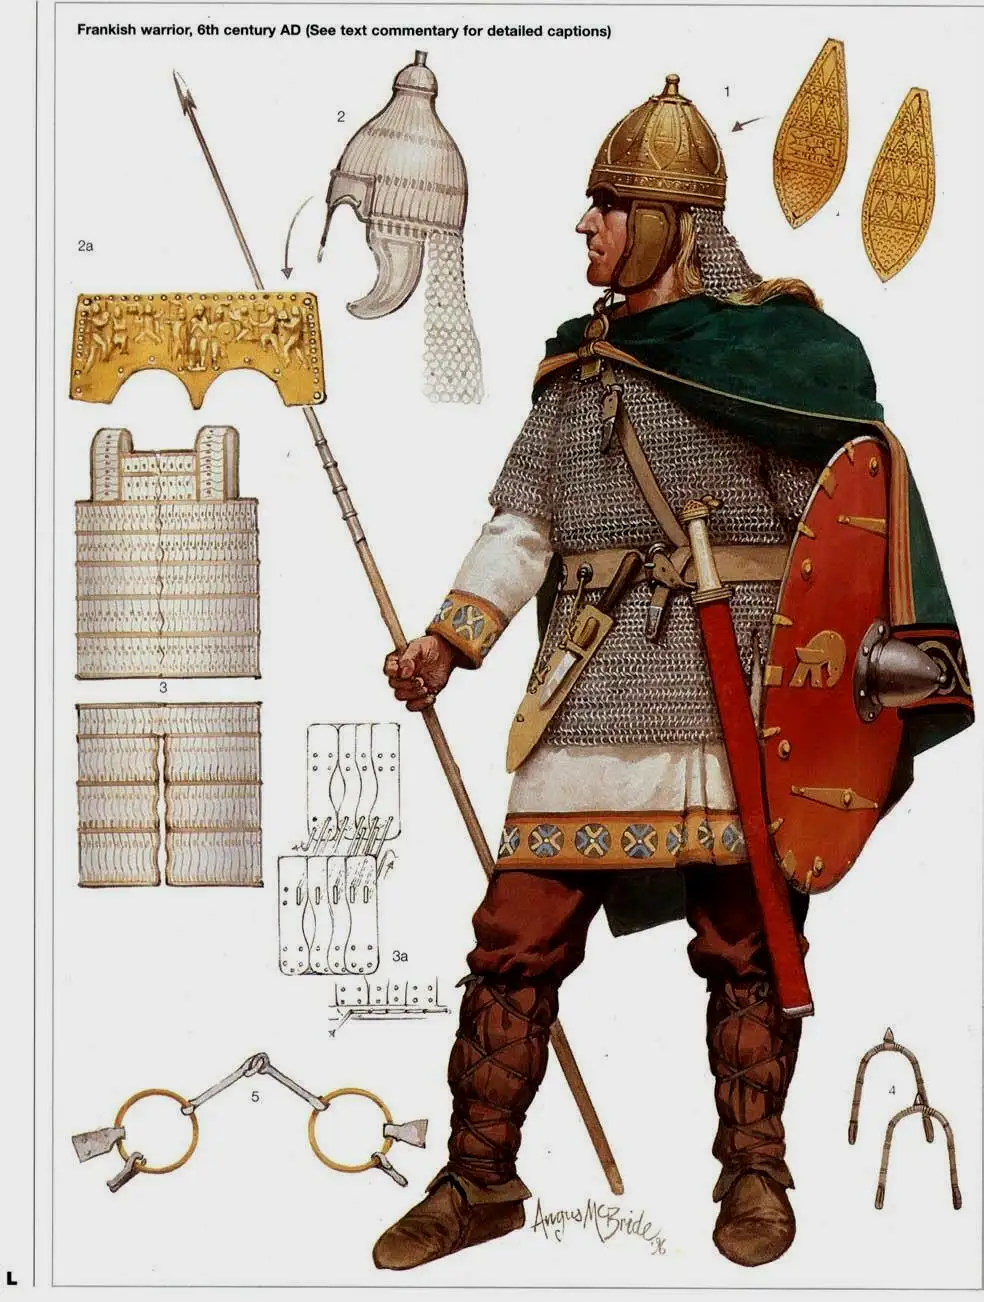 6世纪的墨洛温王朝法兰克士兵，他的这种日耳曼瓣盔在法国、意大利和俄罗斯都出土过（但是并未发现于不列颠群岛）。6世纪时扎盔和扎甲在欧洲也有使用，图中左上的扎盔曾被阿勒曼人使用，而左侧的扎甲曾发现于阿勒曼人和伦巴底人的墓葬中。法兰克骑兵主要还是步战为主，除非是需要追击、扫荡的时候才不会下马。